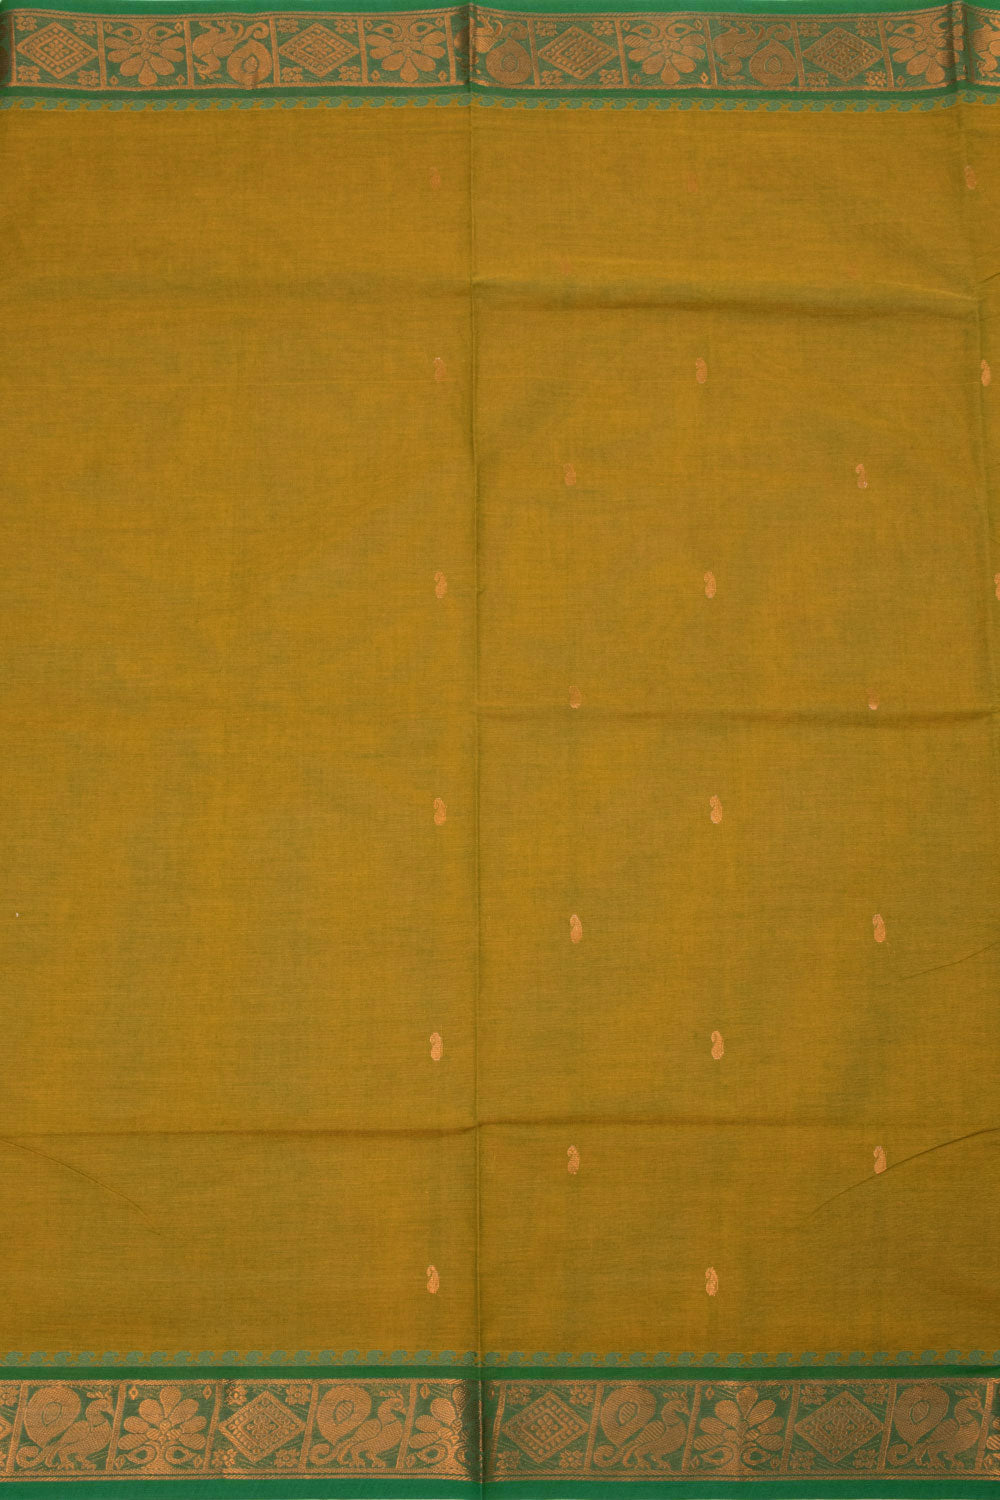 Green & Mustard Dual Shade Handloom Kanchi Cotton Saree - Avishya